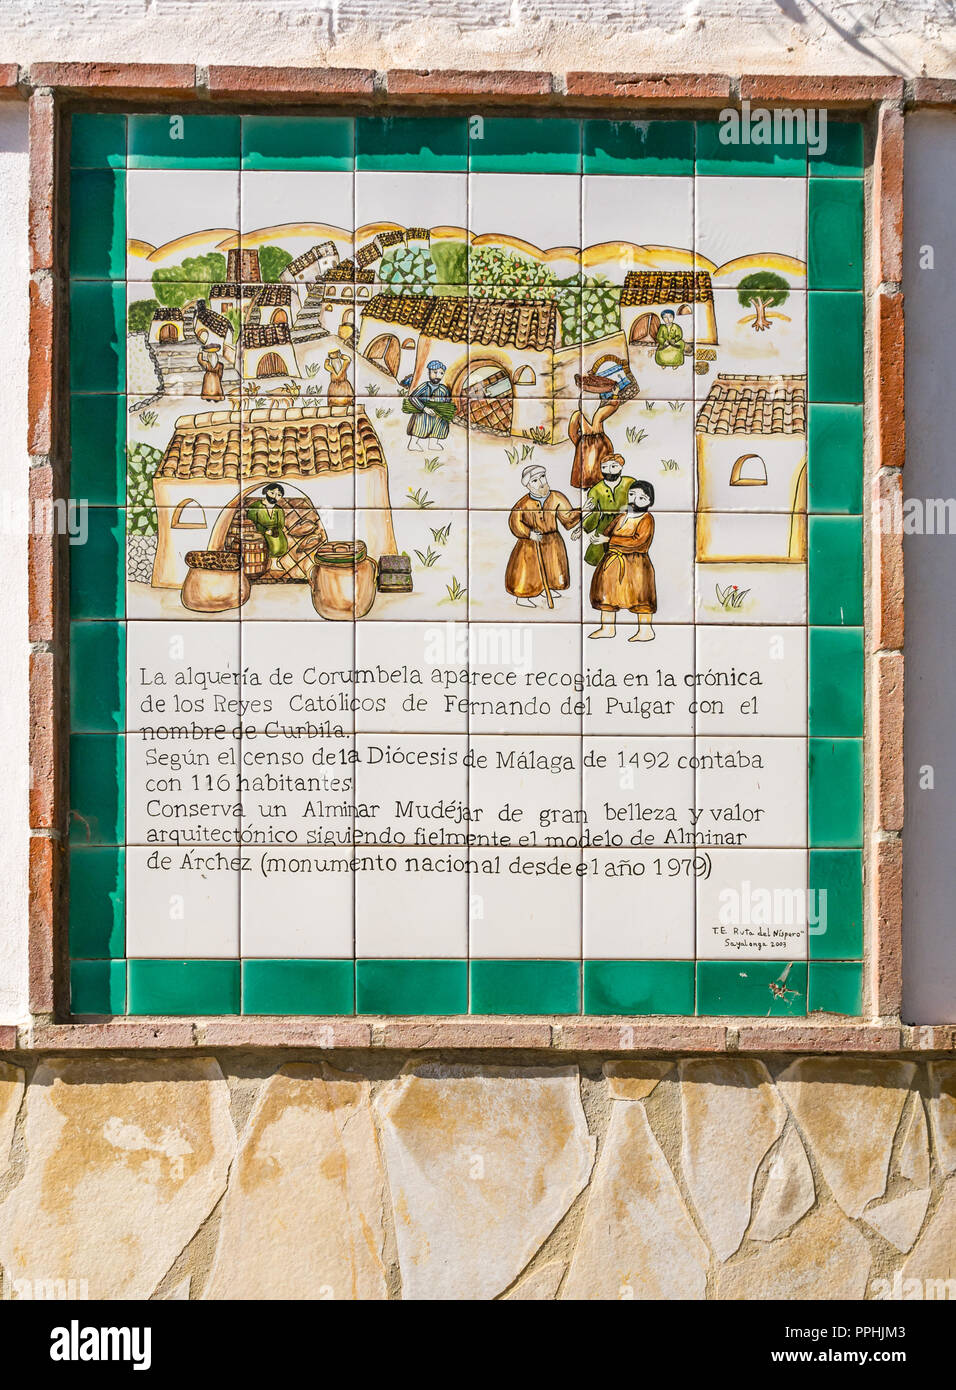 Mur dépeignant des scènes agricoles avec l'histoire locale, de l'information, Corumbela route mudéjar, Axarquía, Andalousie, Espagne Banque D'Images